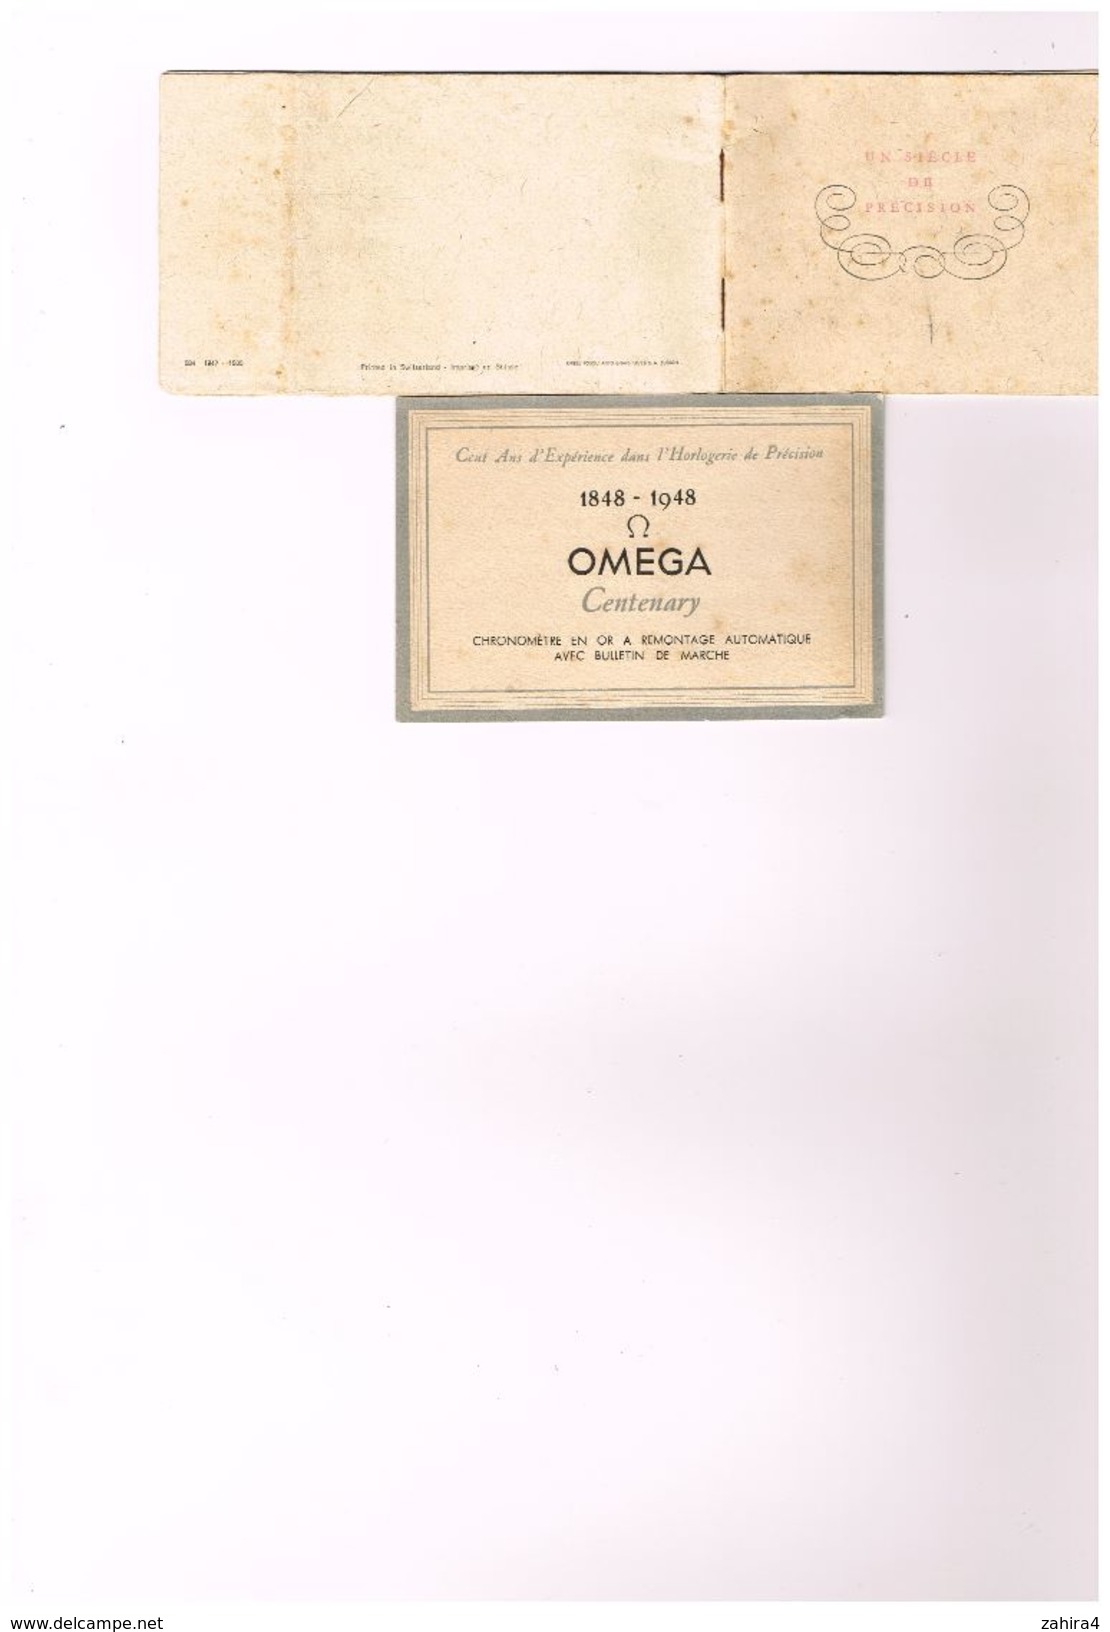 Horlogerie Montre Chronomêtre - Omega 1848 - 1948 - Chrono En Or - Certificat De Marche N° 733 - Suisse - Kew-Teddington - Advertising